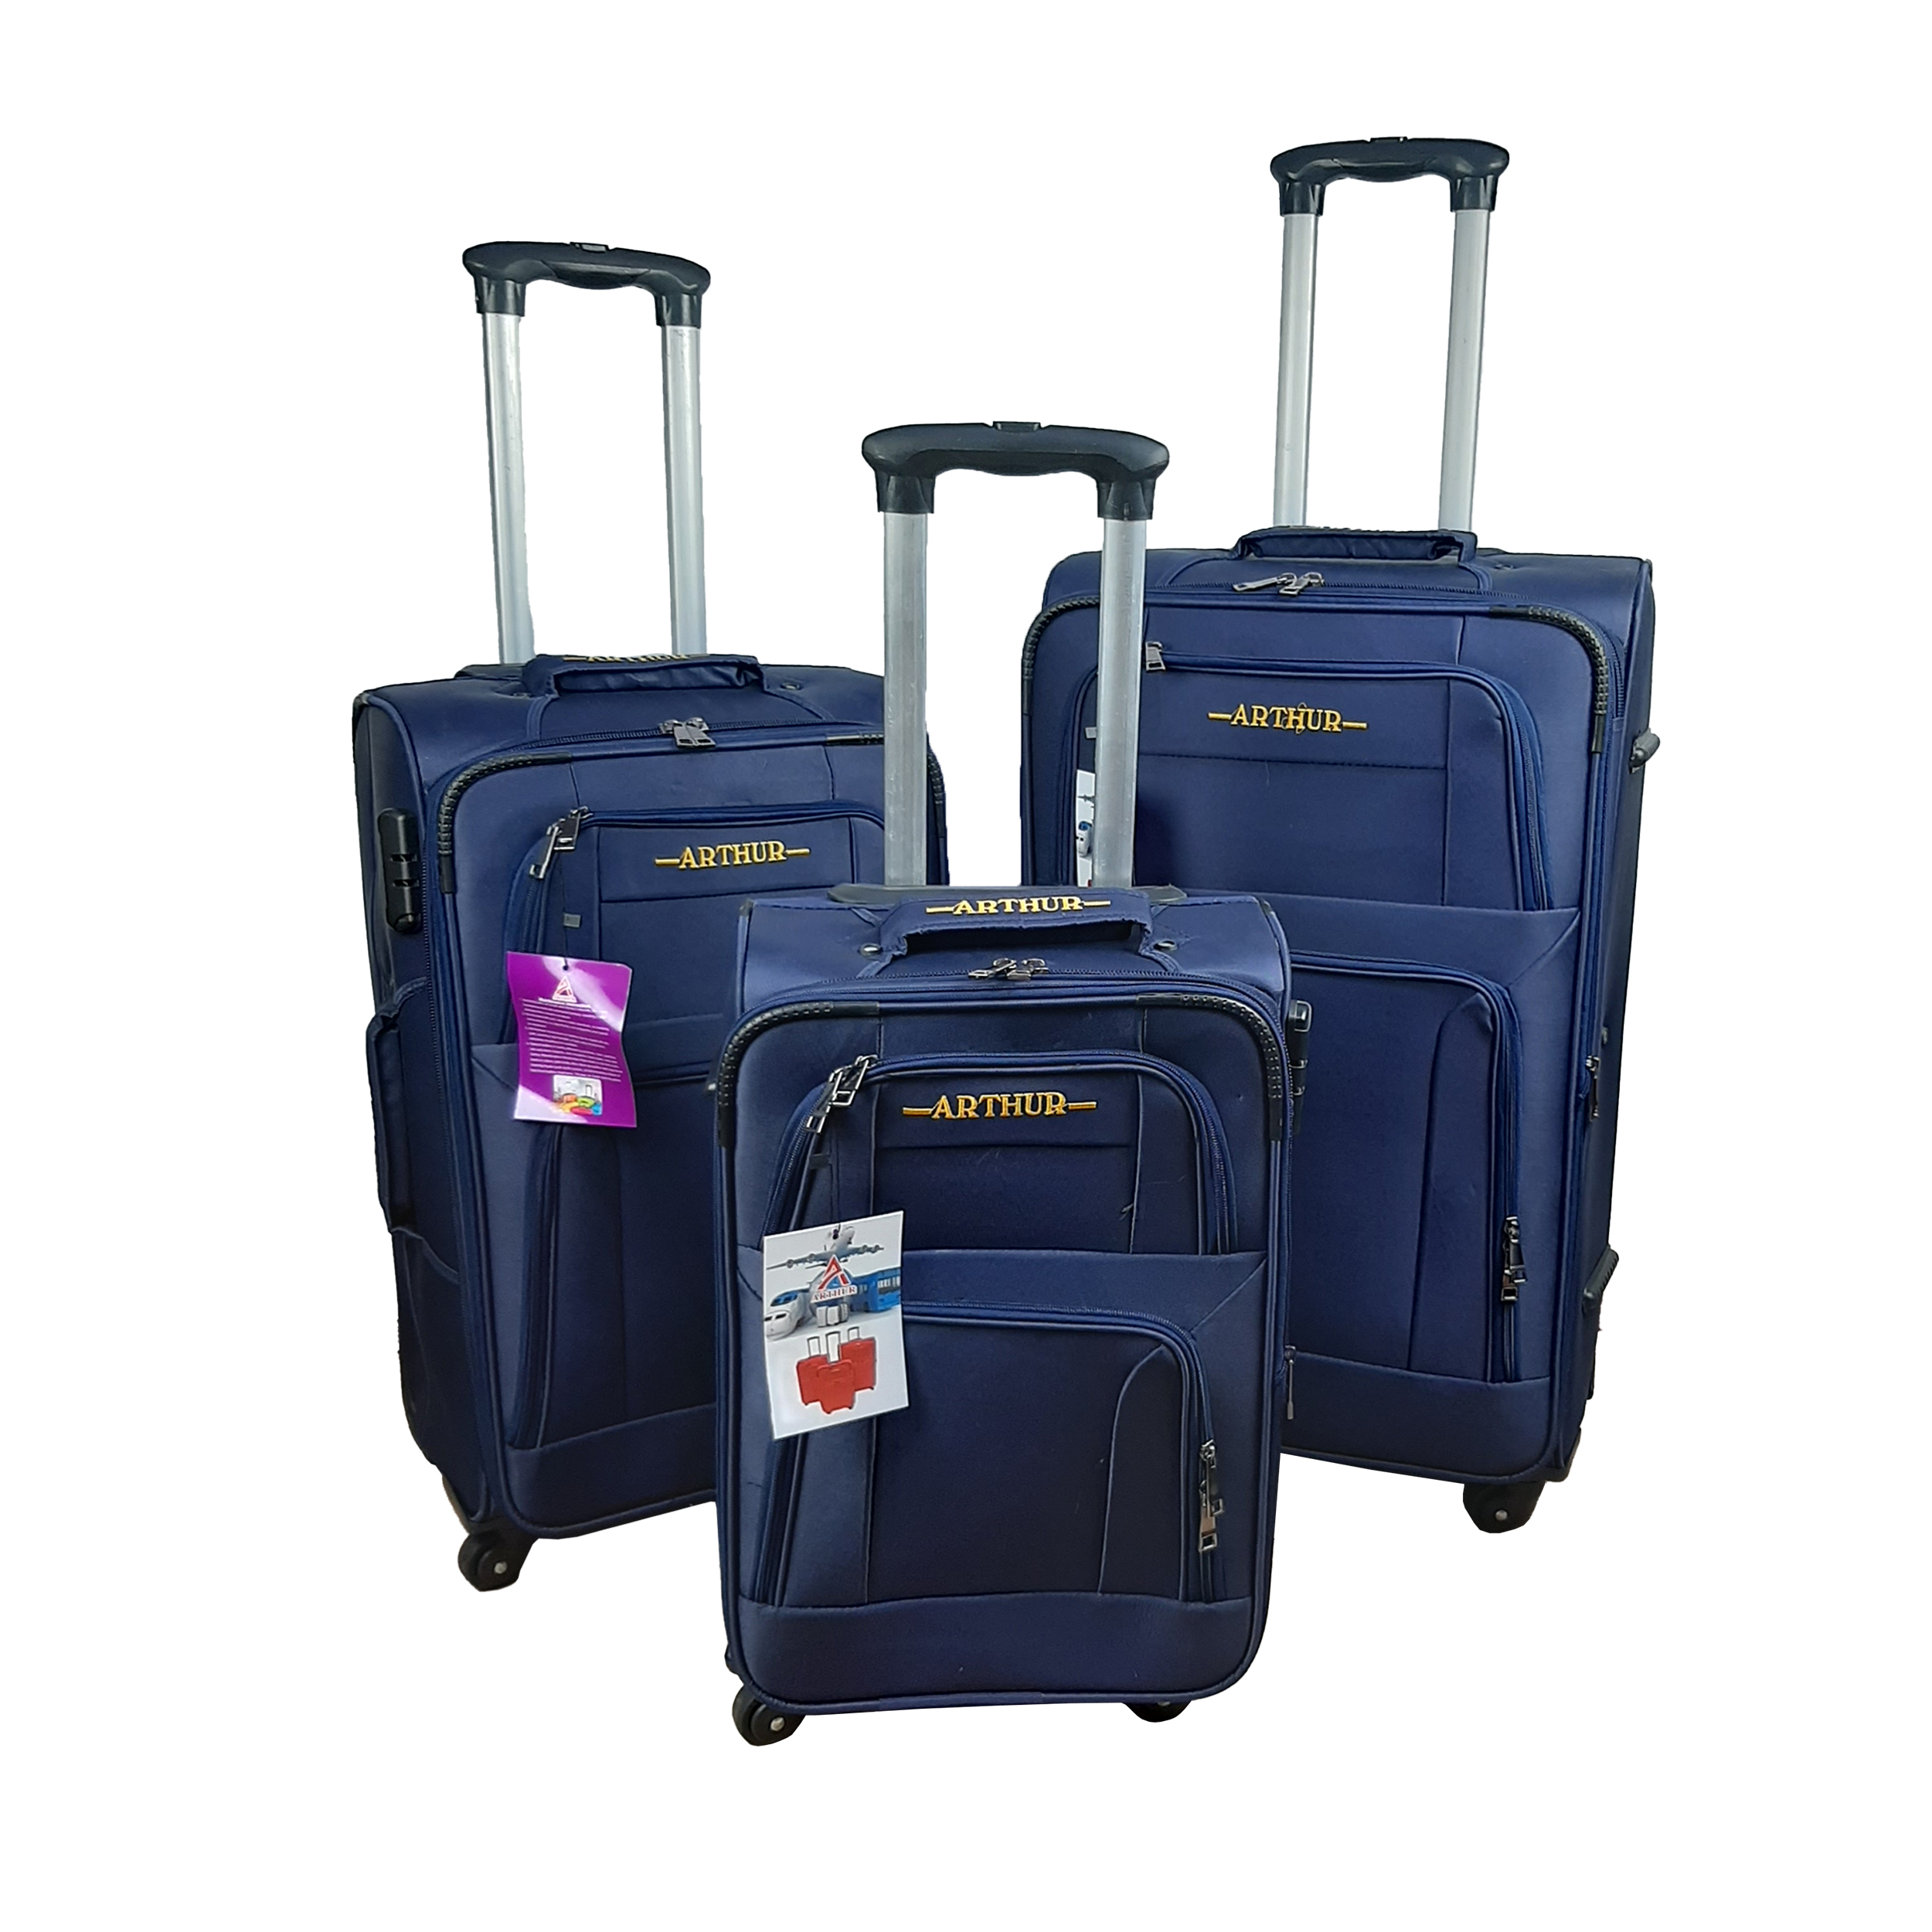  مجموعه سه عددی چمدان آرتور مدل J4050